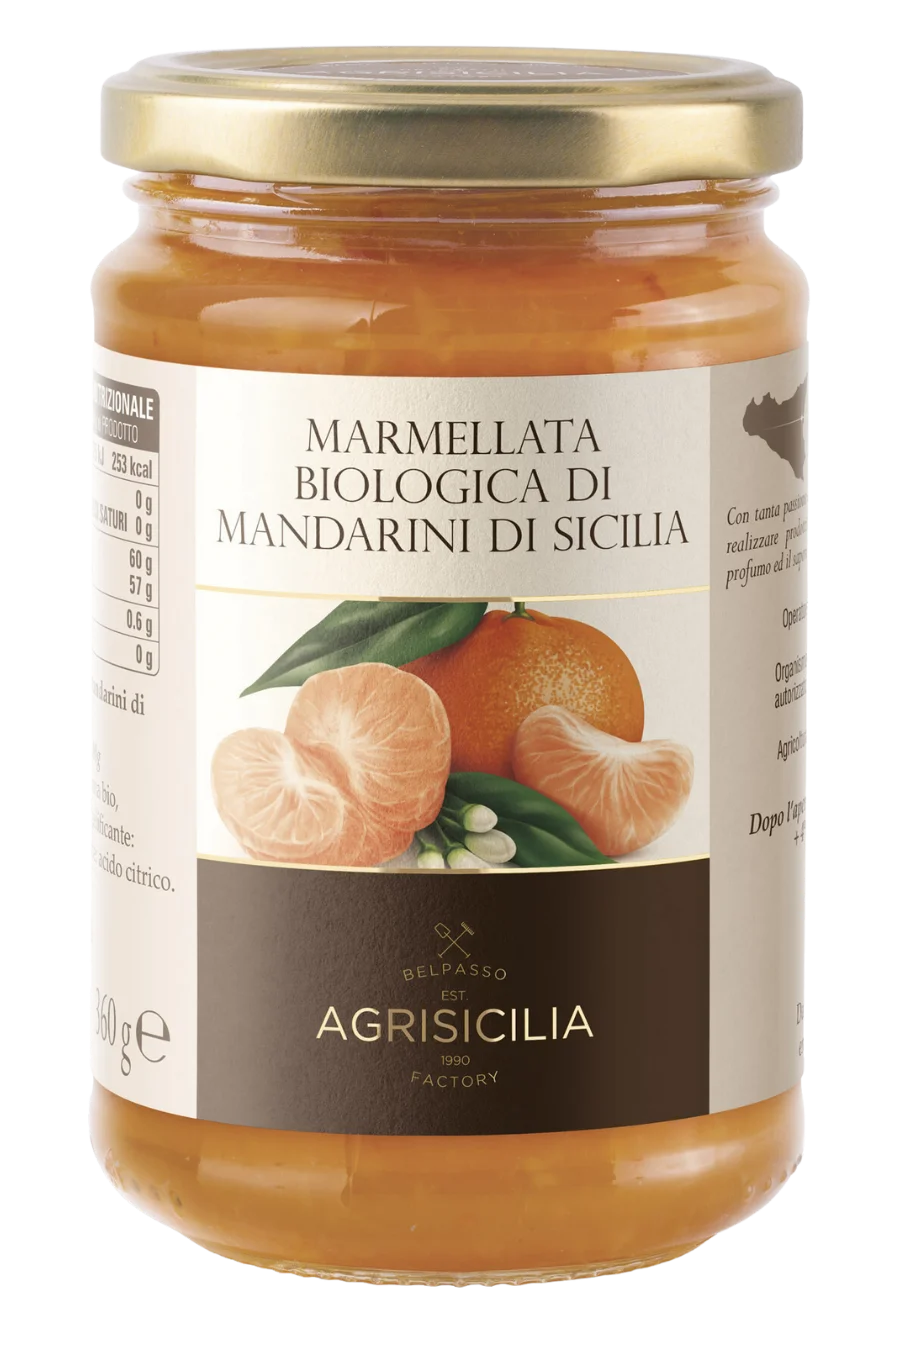 Vasetto di Marmellata Biologica di Mandarini di Sicilia AGRISICILIA